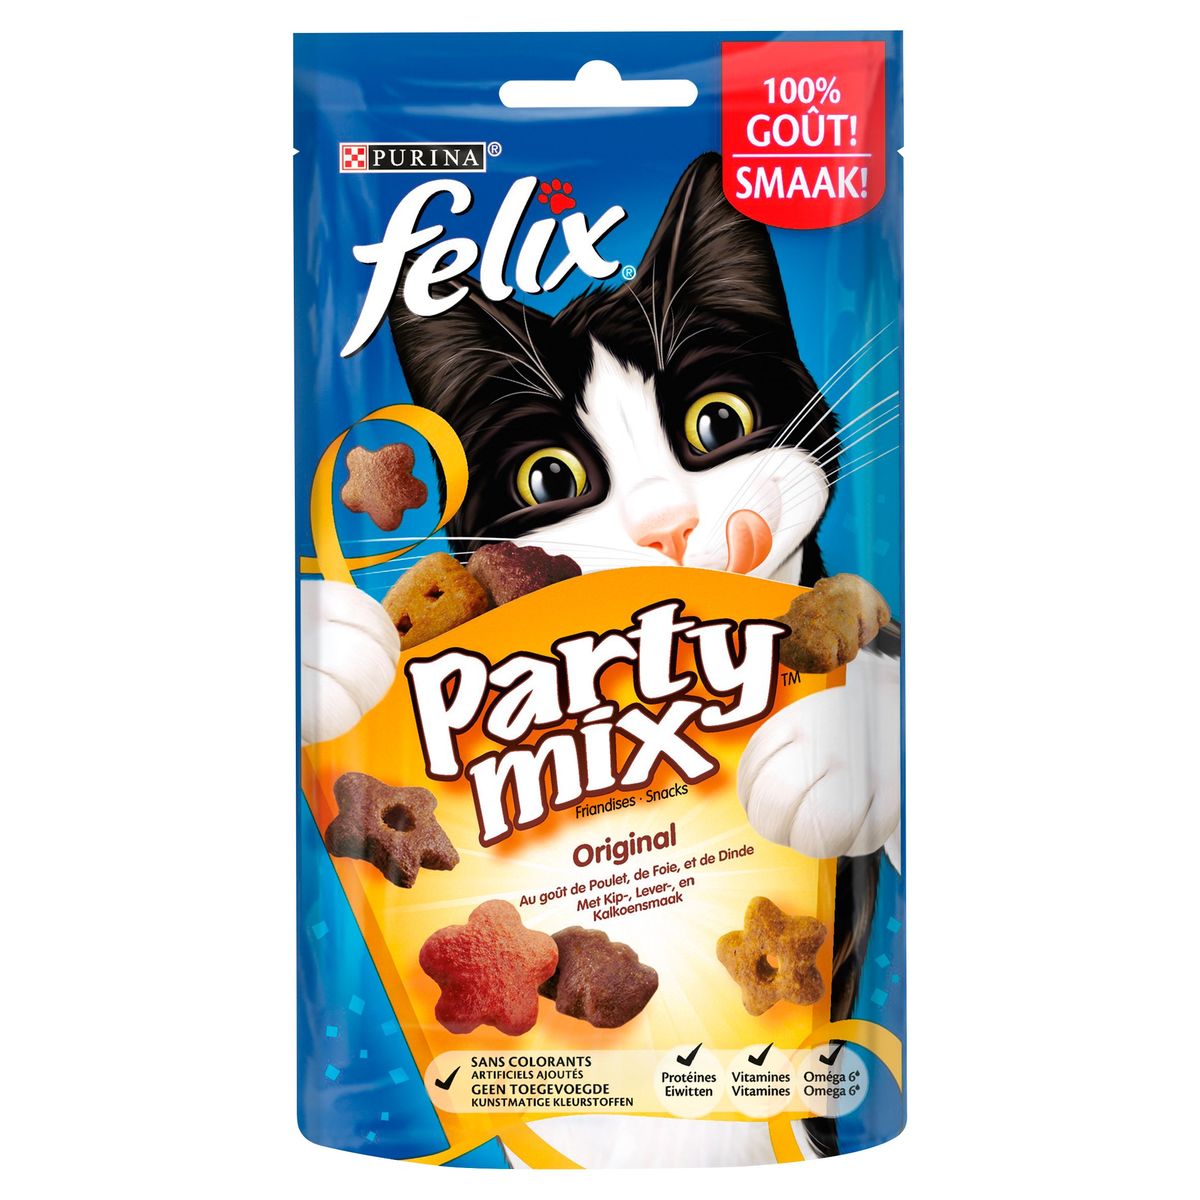 Felix Party Mix Friandises Snacks Original au Goût de Poulet de Foie et de Dinde 60 g